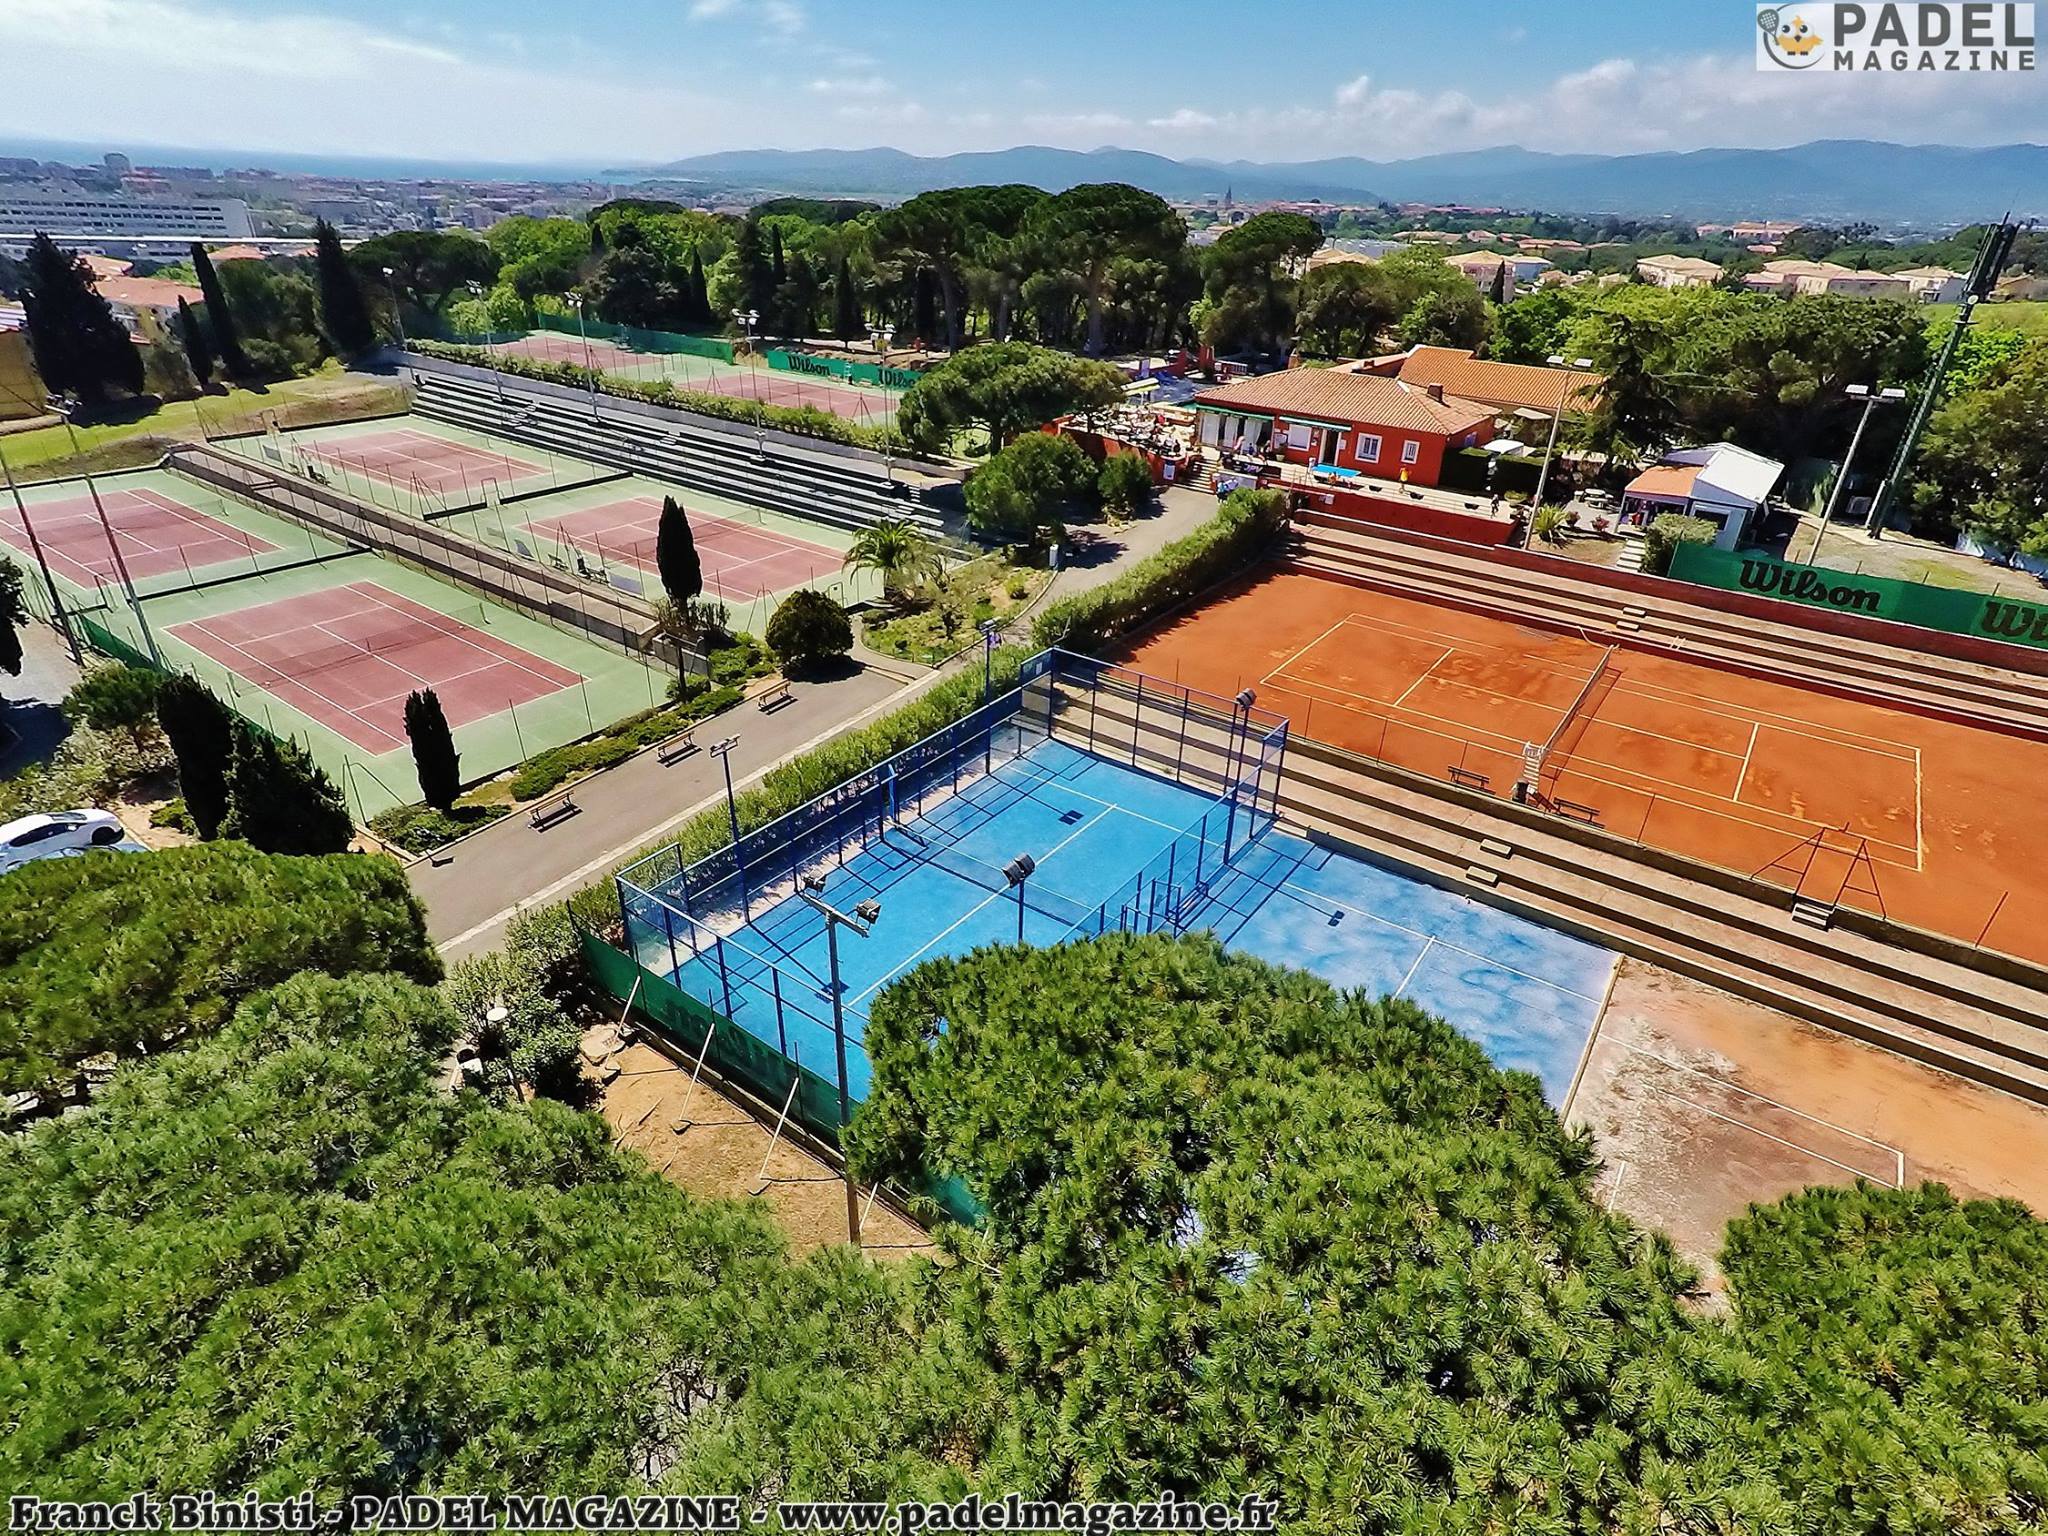 Der Tennis Club de Fréjus bietet padel